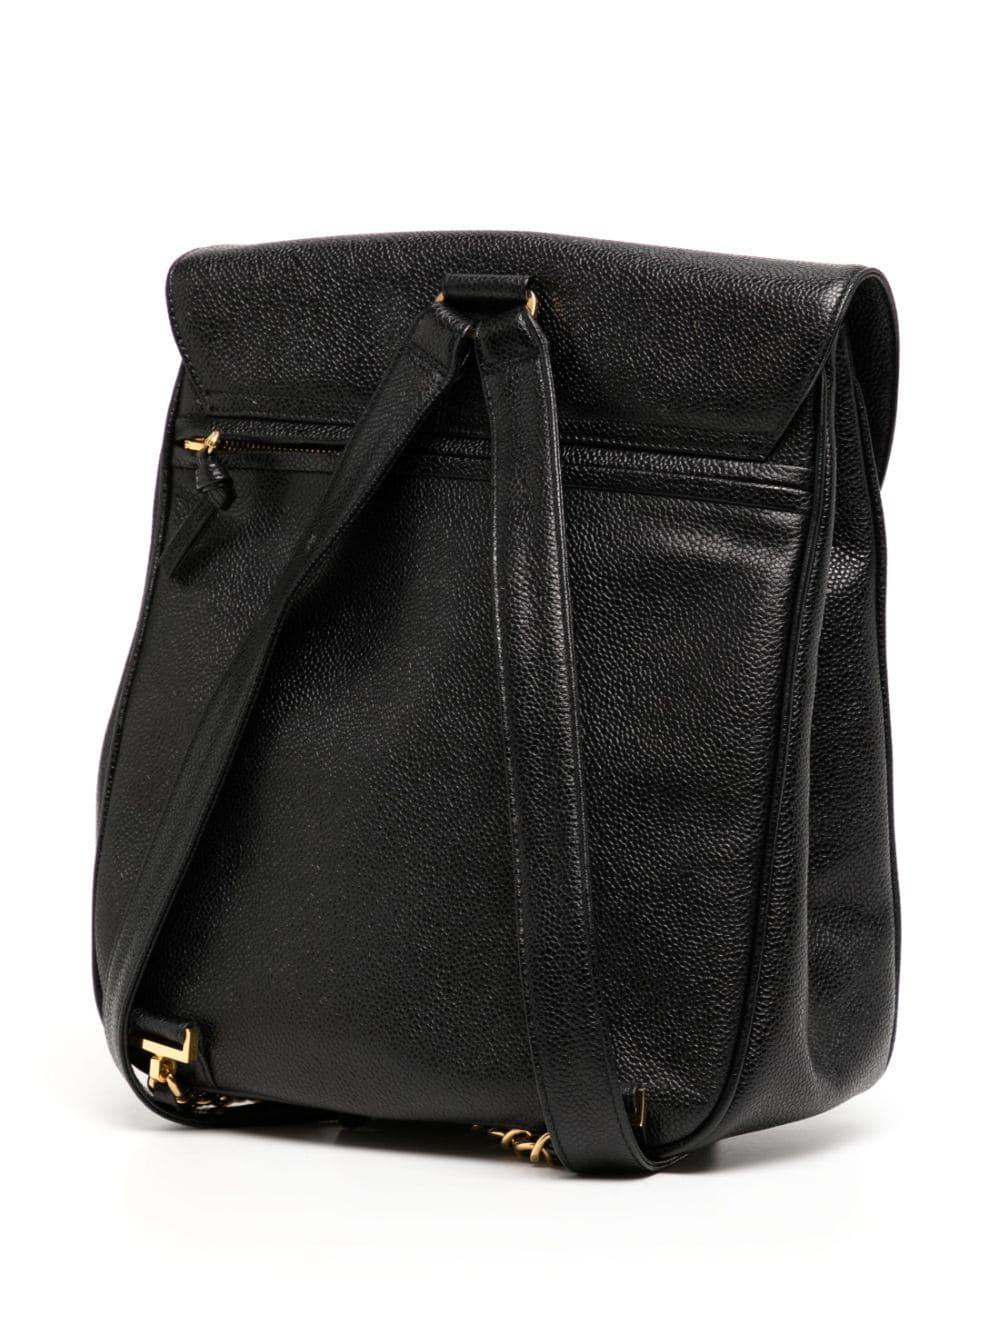 Women's or Men's Chanel 1994 Vintage Caviar Black Leather Double Pocket Duma Backpack Bag For Sale